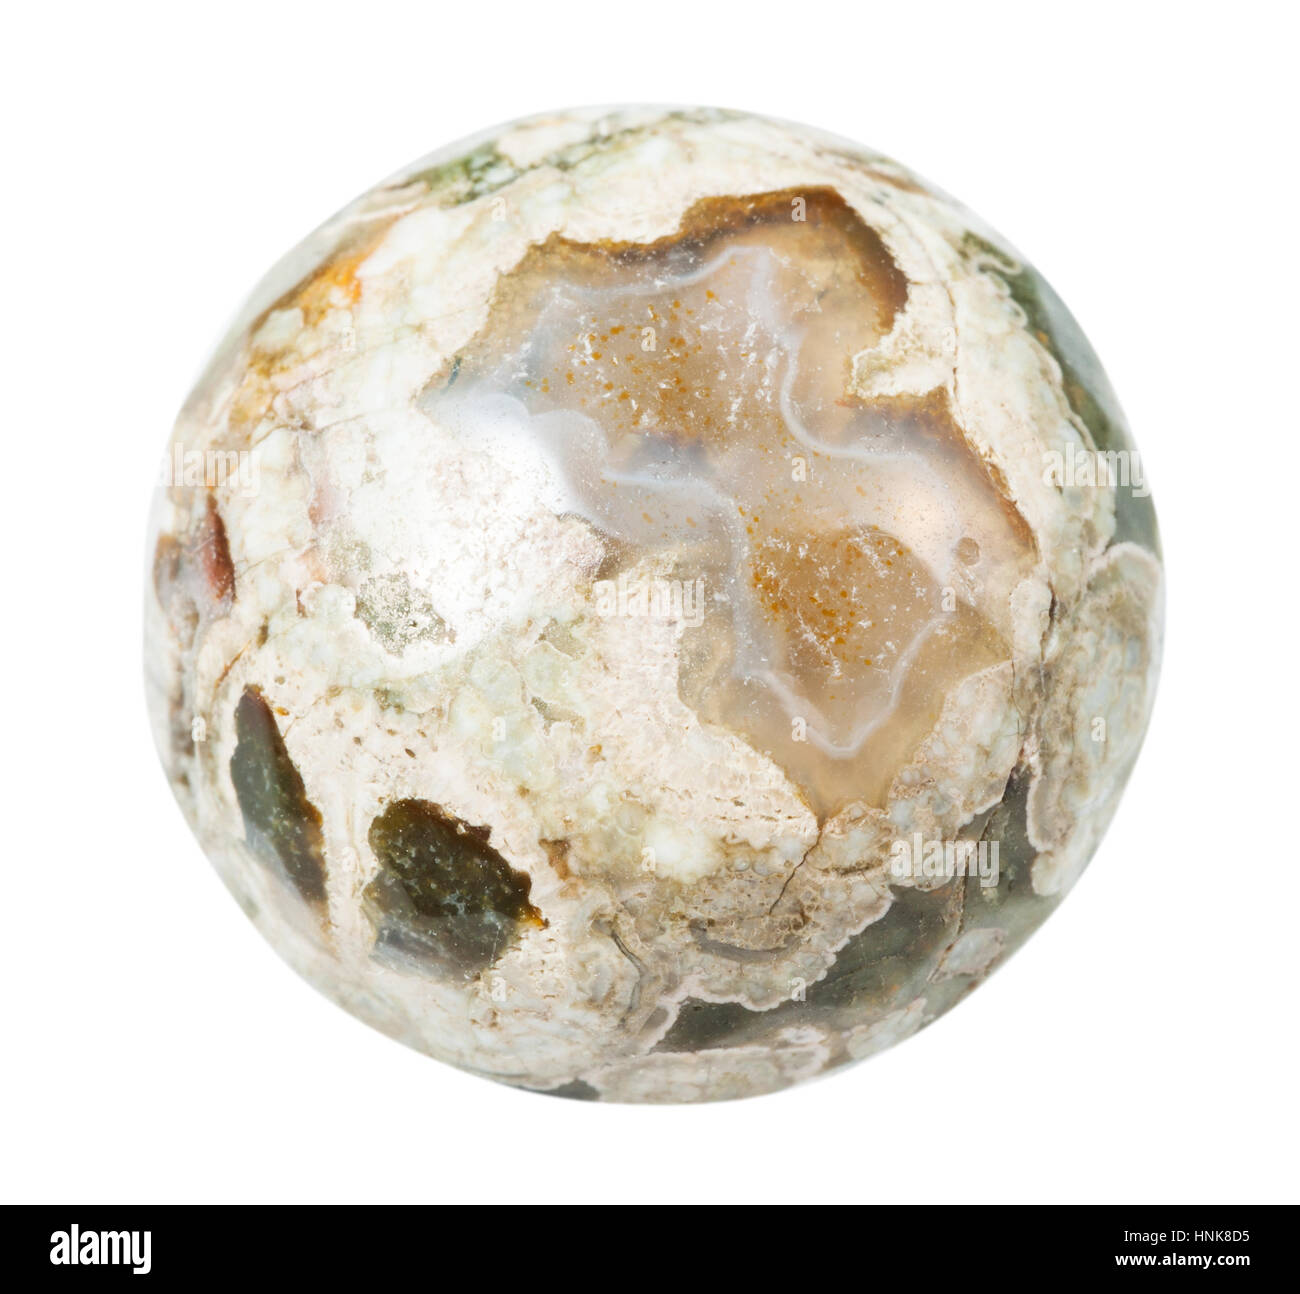 Makro-Aufnahmen der geologischen Sammlung Mineral - Trommelsteine Madagaskar Rhyolith (Ocean Jaspis, Orbicular Jaspis) Stein isoliert auf weißem Hintergrund Stockfoto